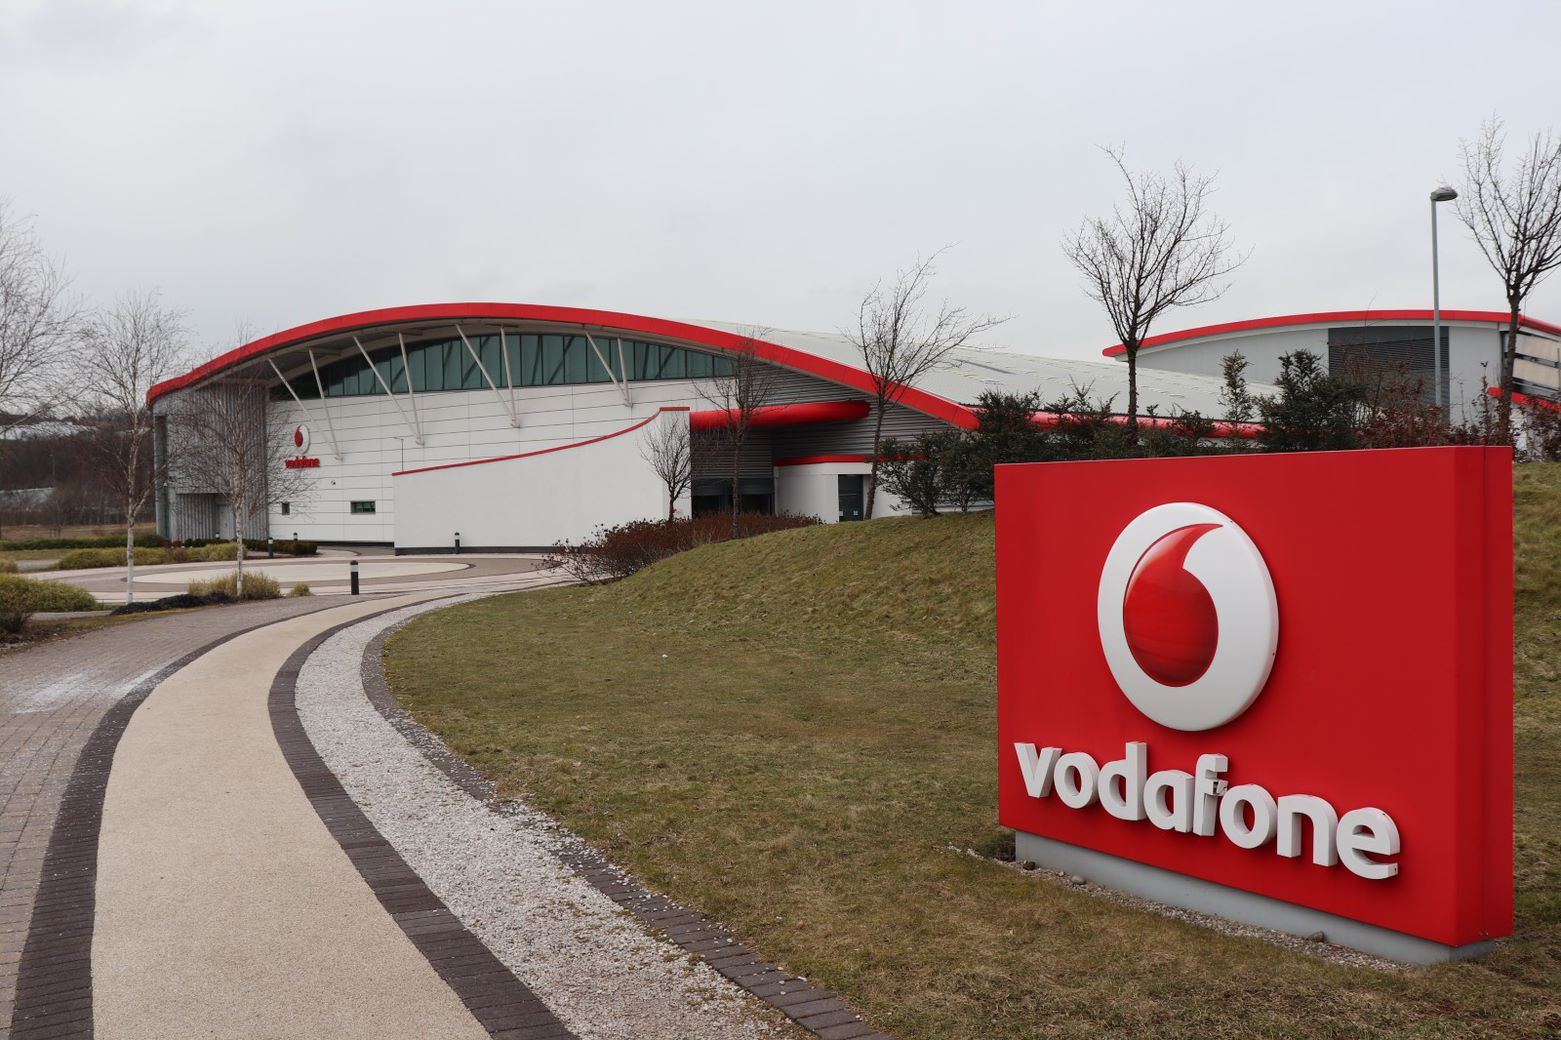 Vodafone Stoke-on-Trent customer care centre